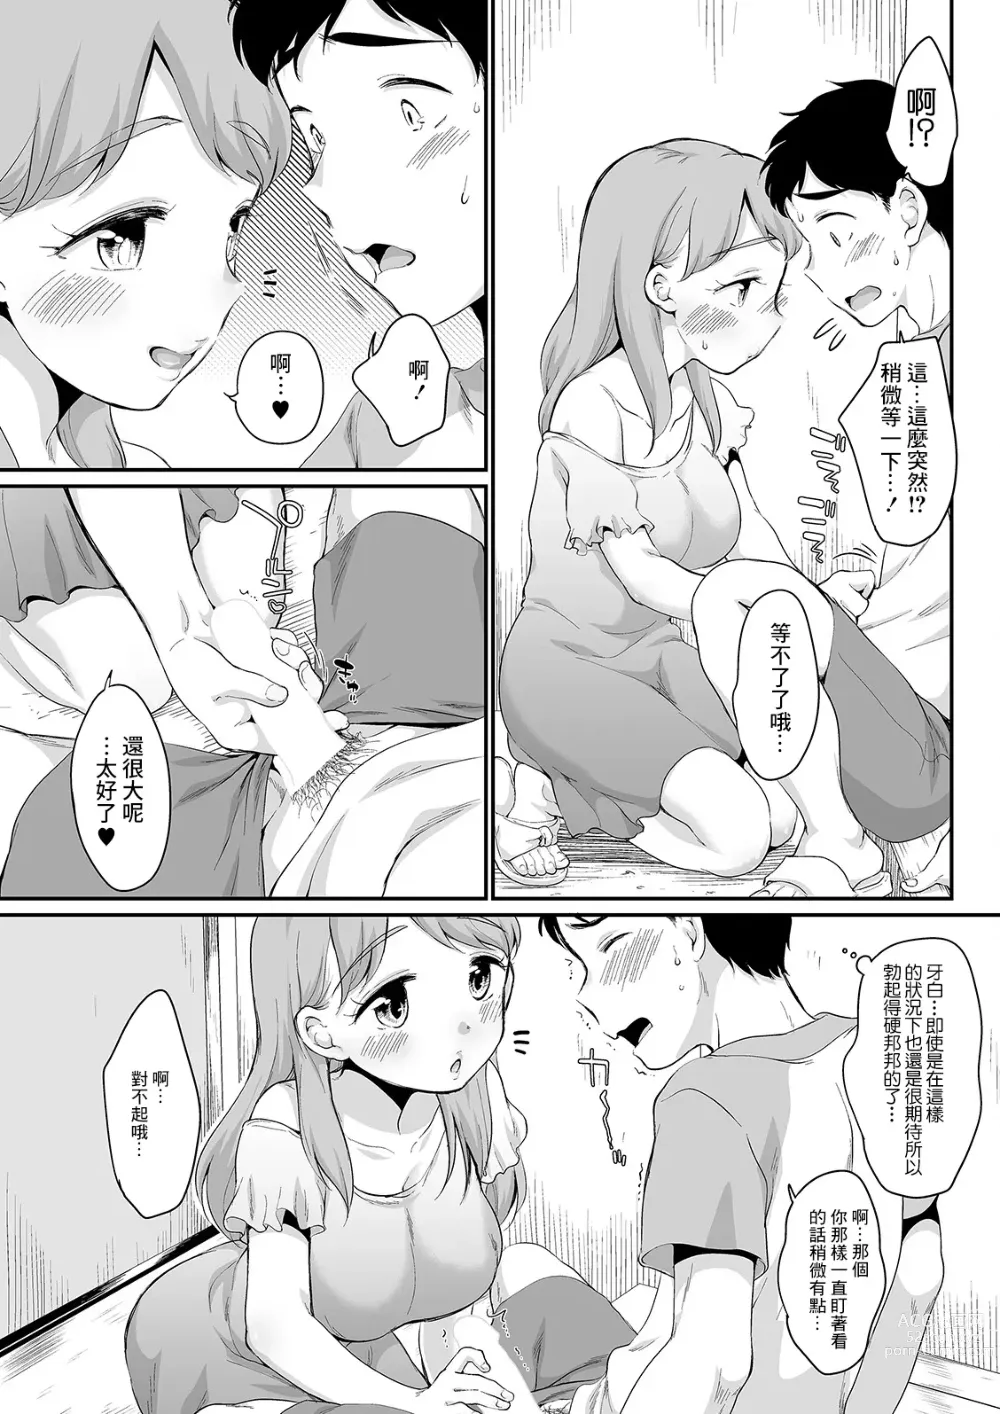 Page 5 of manga Kashite Hoshi no